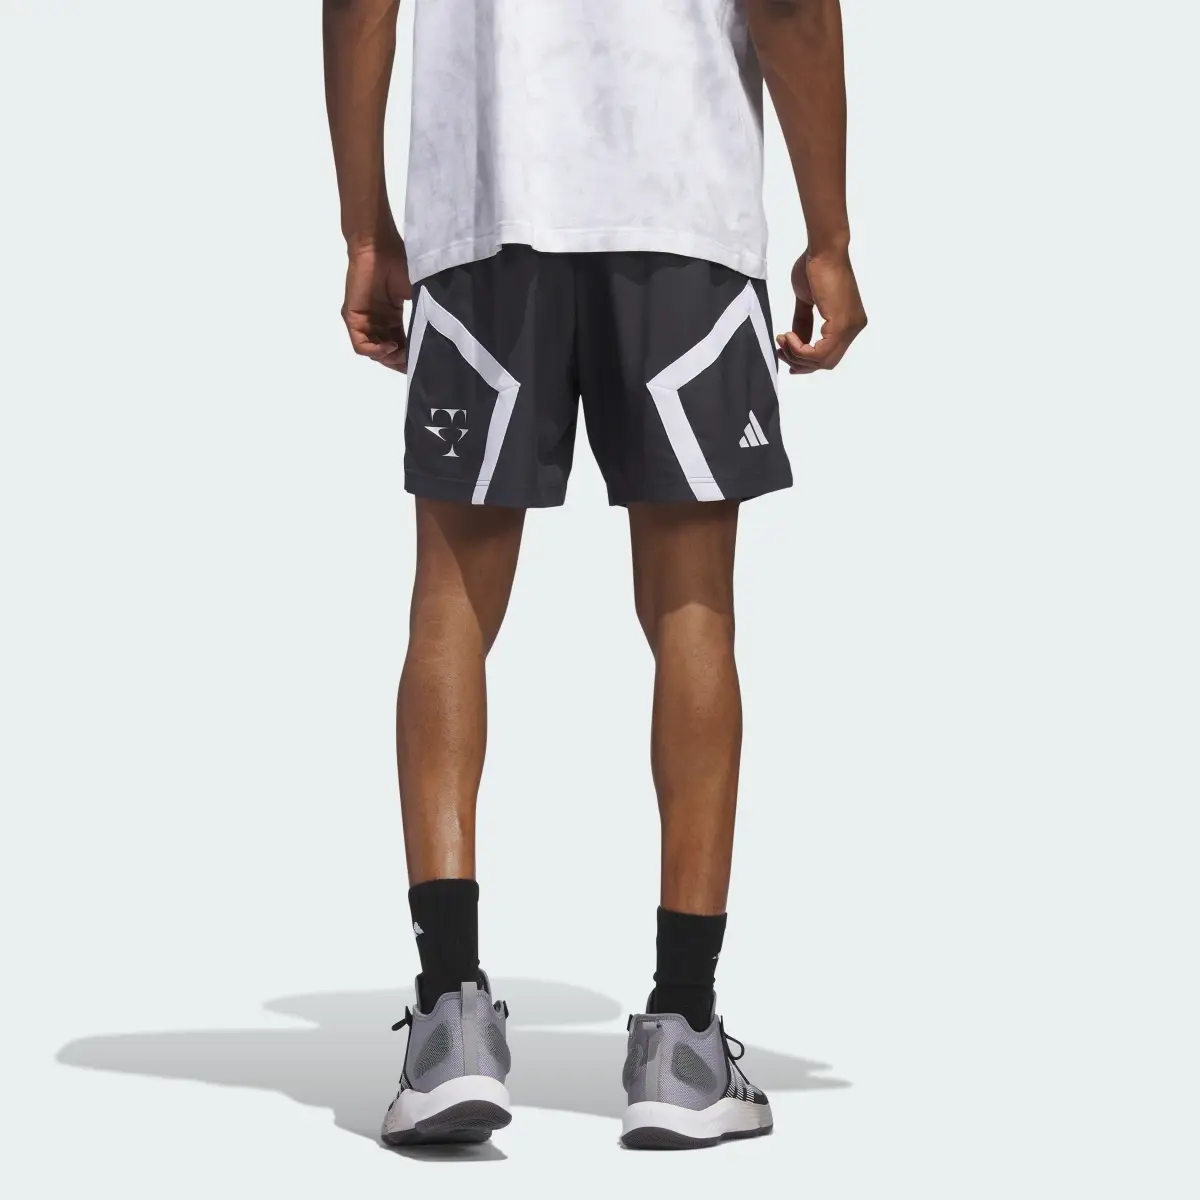 Adidas Trae Foundation Shorts. 2